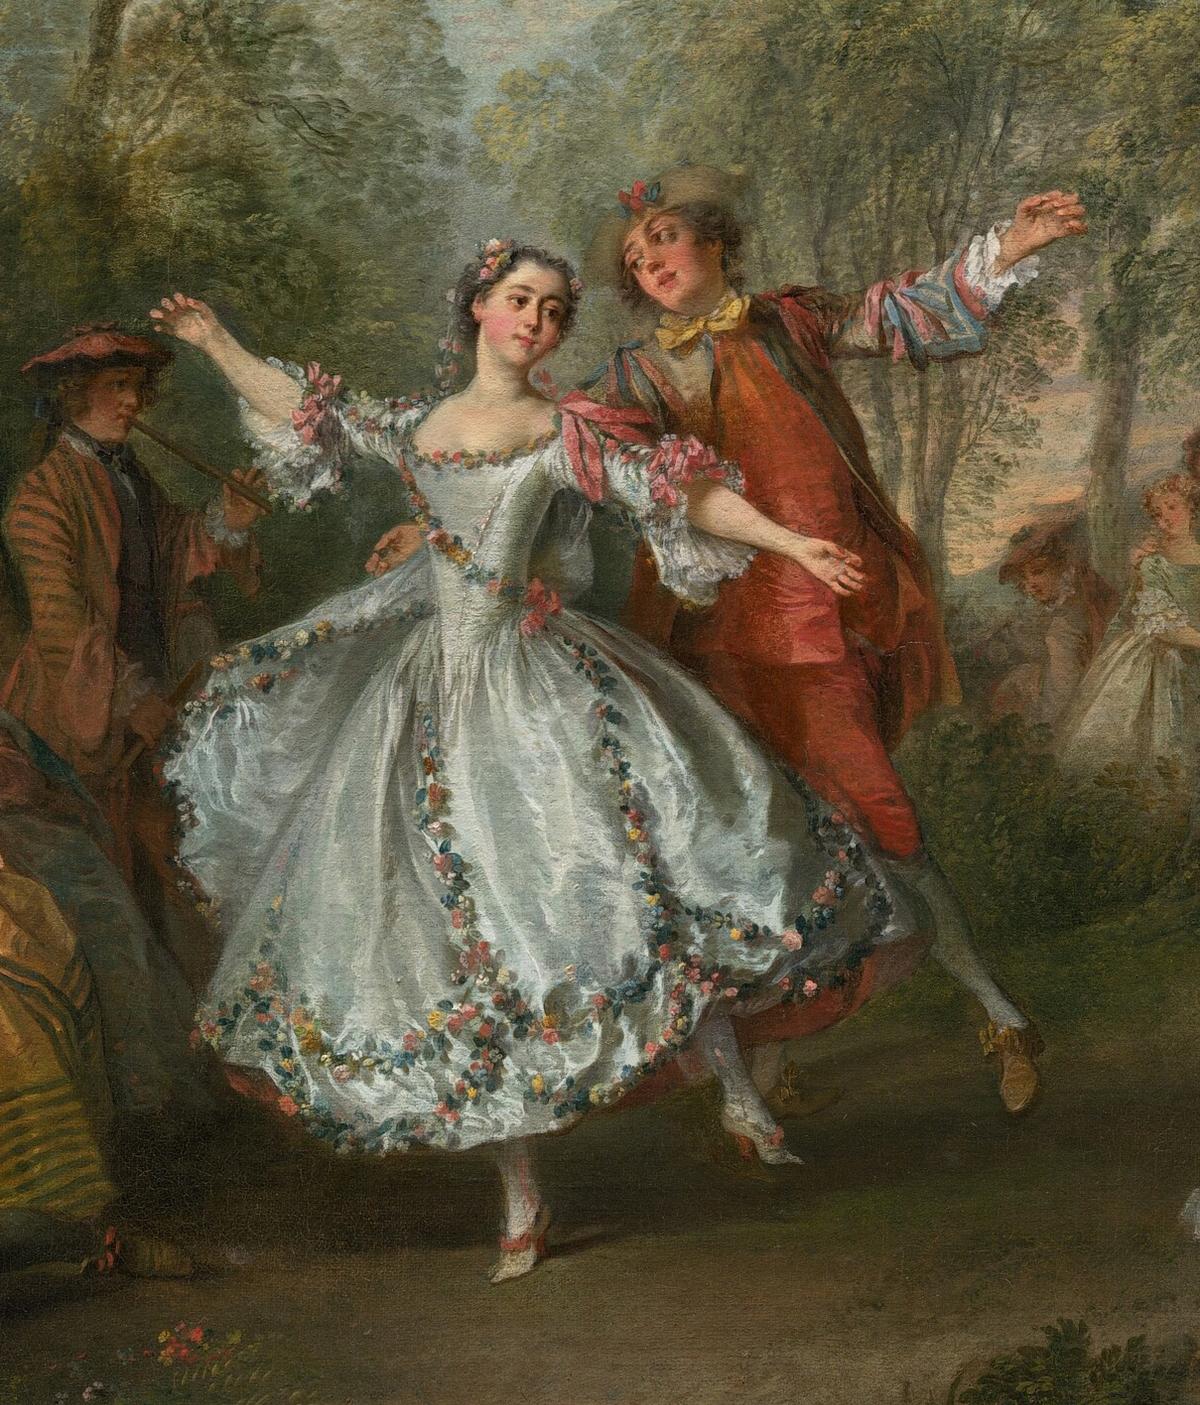 Detail of dancers in "La Camargo Dancing," circa 1730, by Nicolas Lancret. (Public Domain)